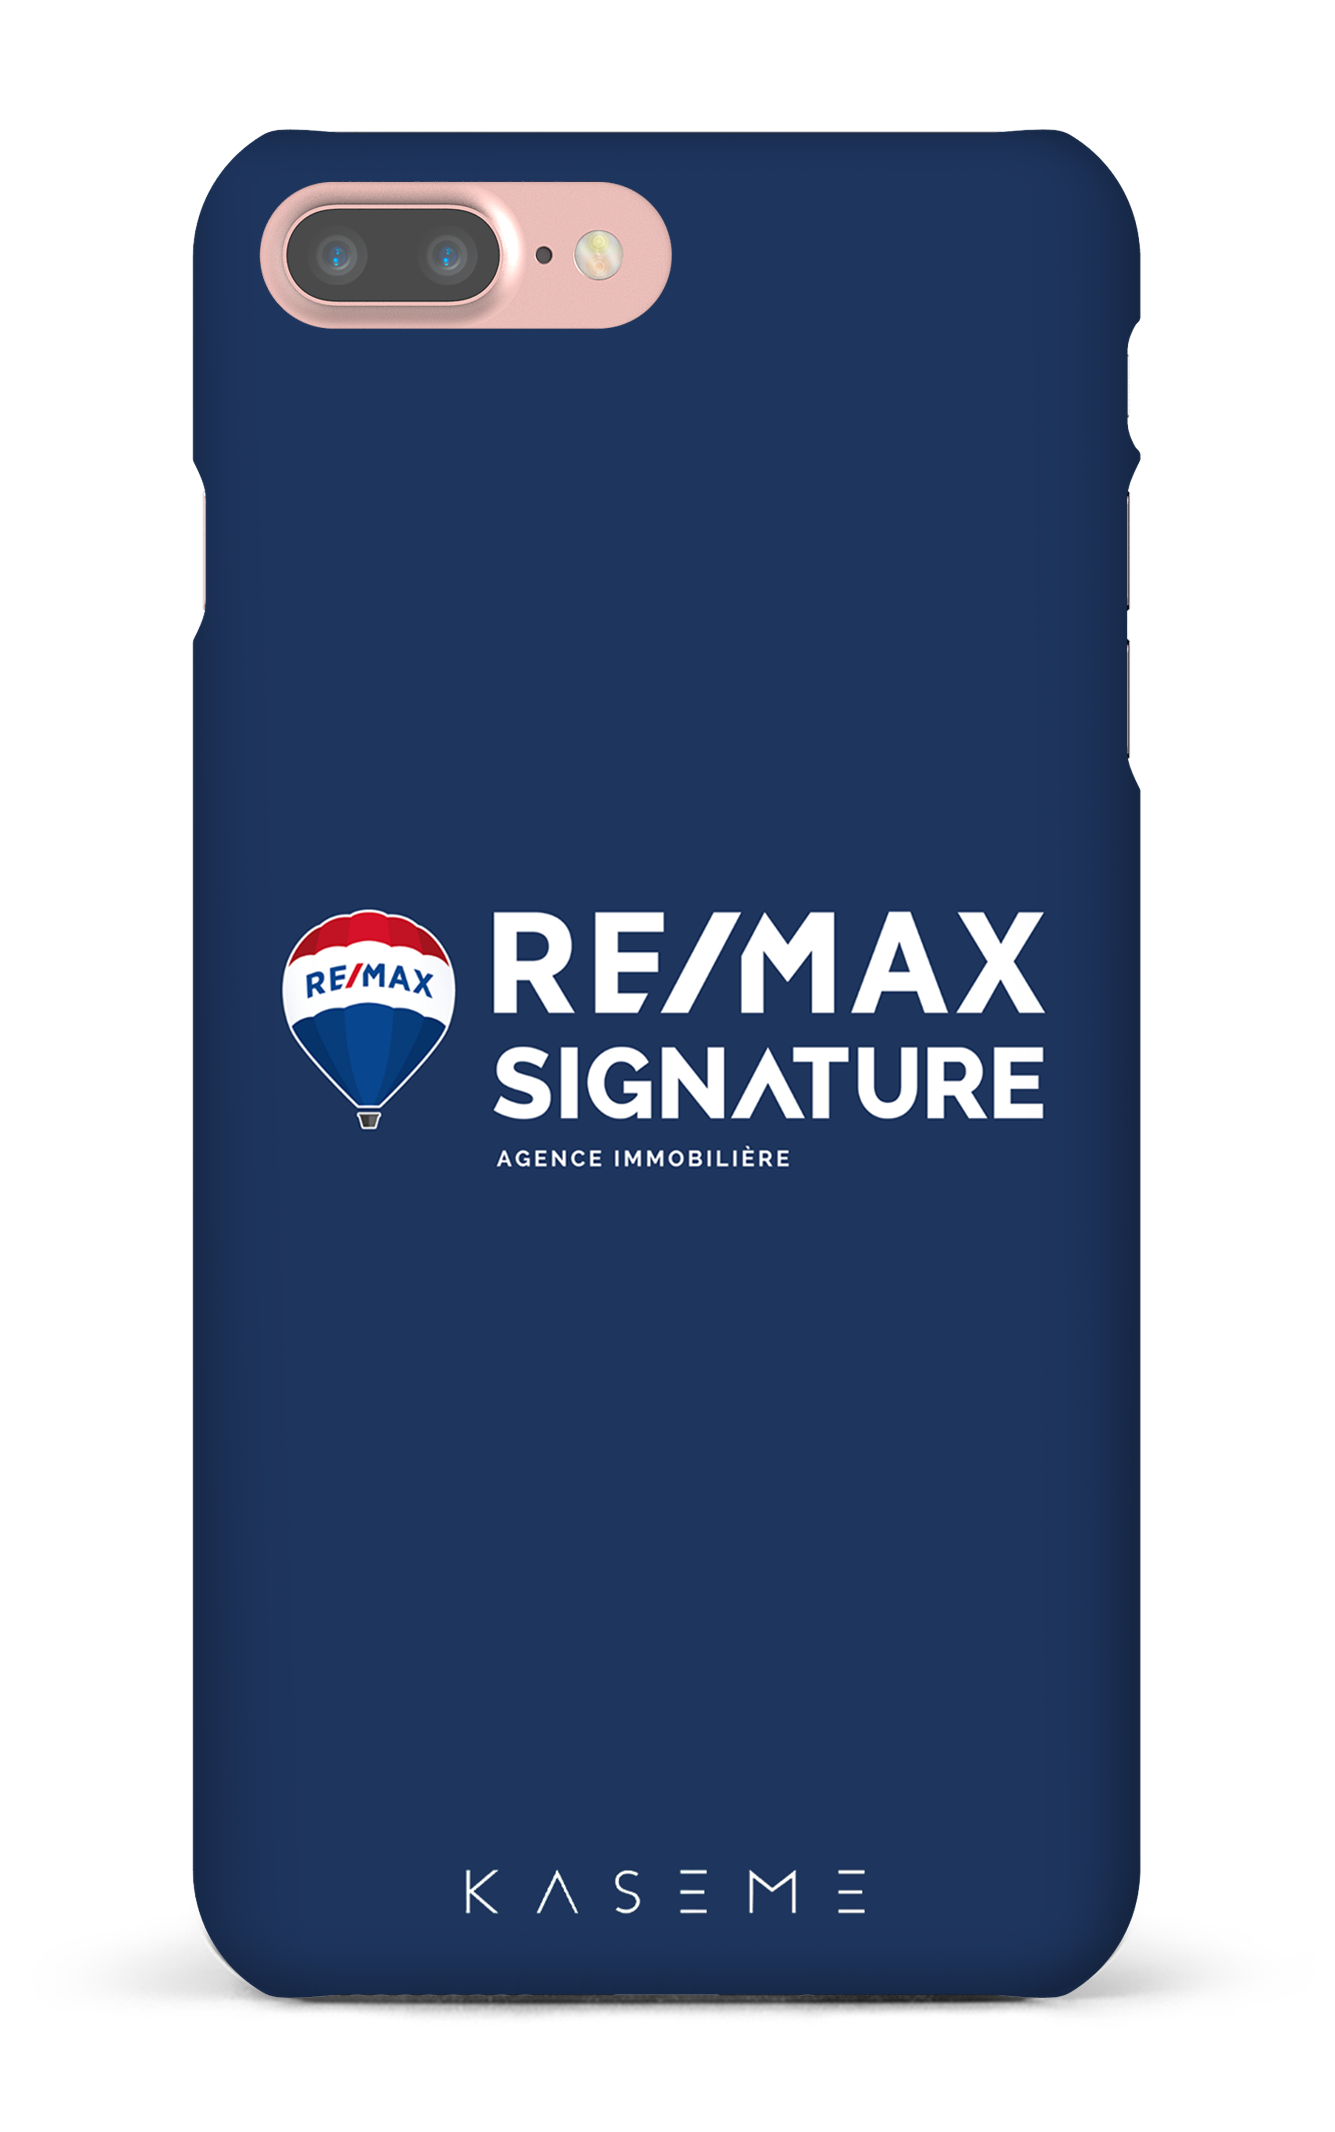 Remax Signature Bleu - iPhone 7 Plus